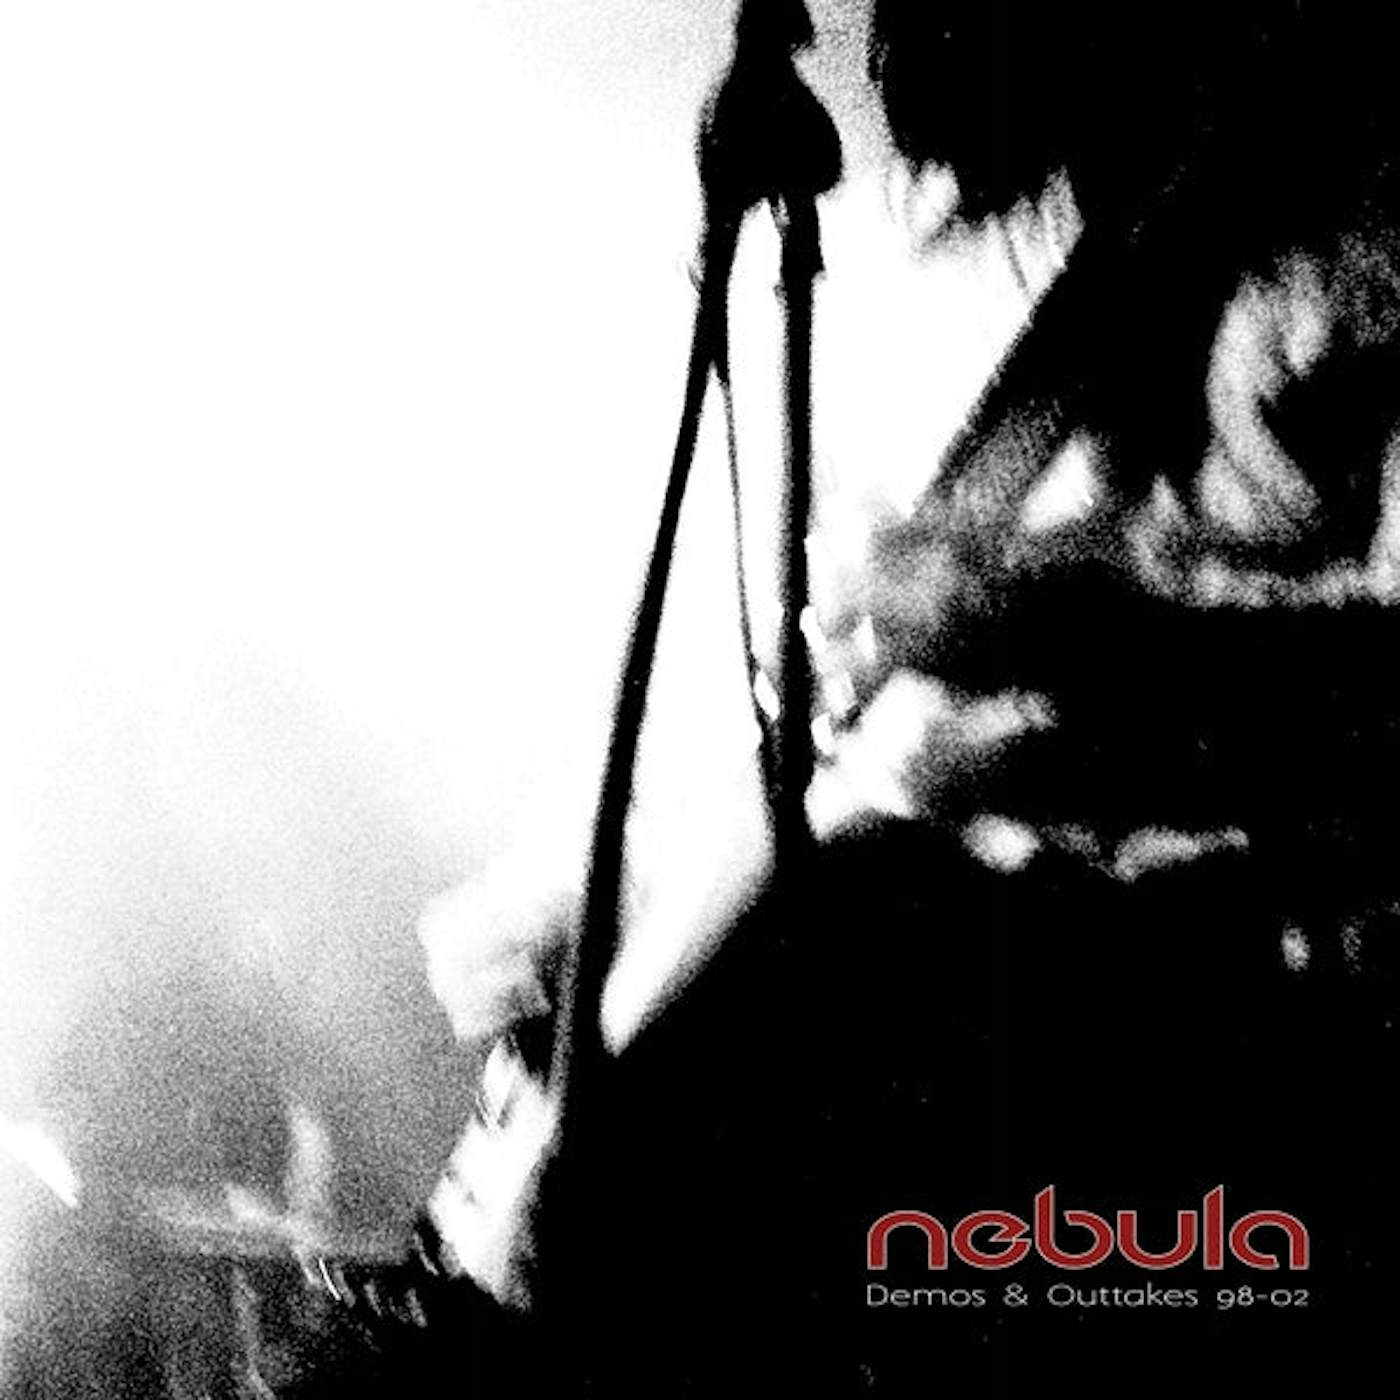 Nebula LP - Demos & Outtakes 98-04 (Coloured Vinyl)